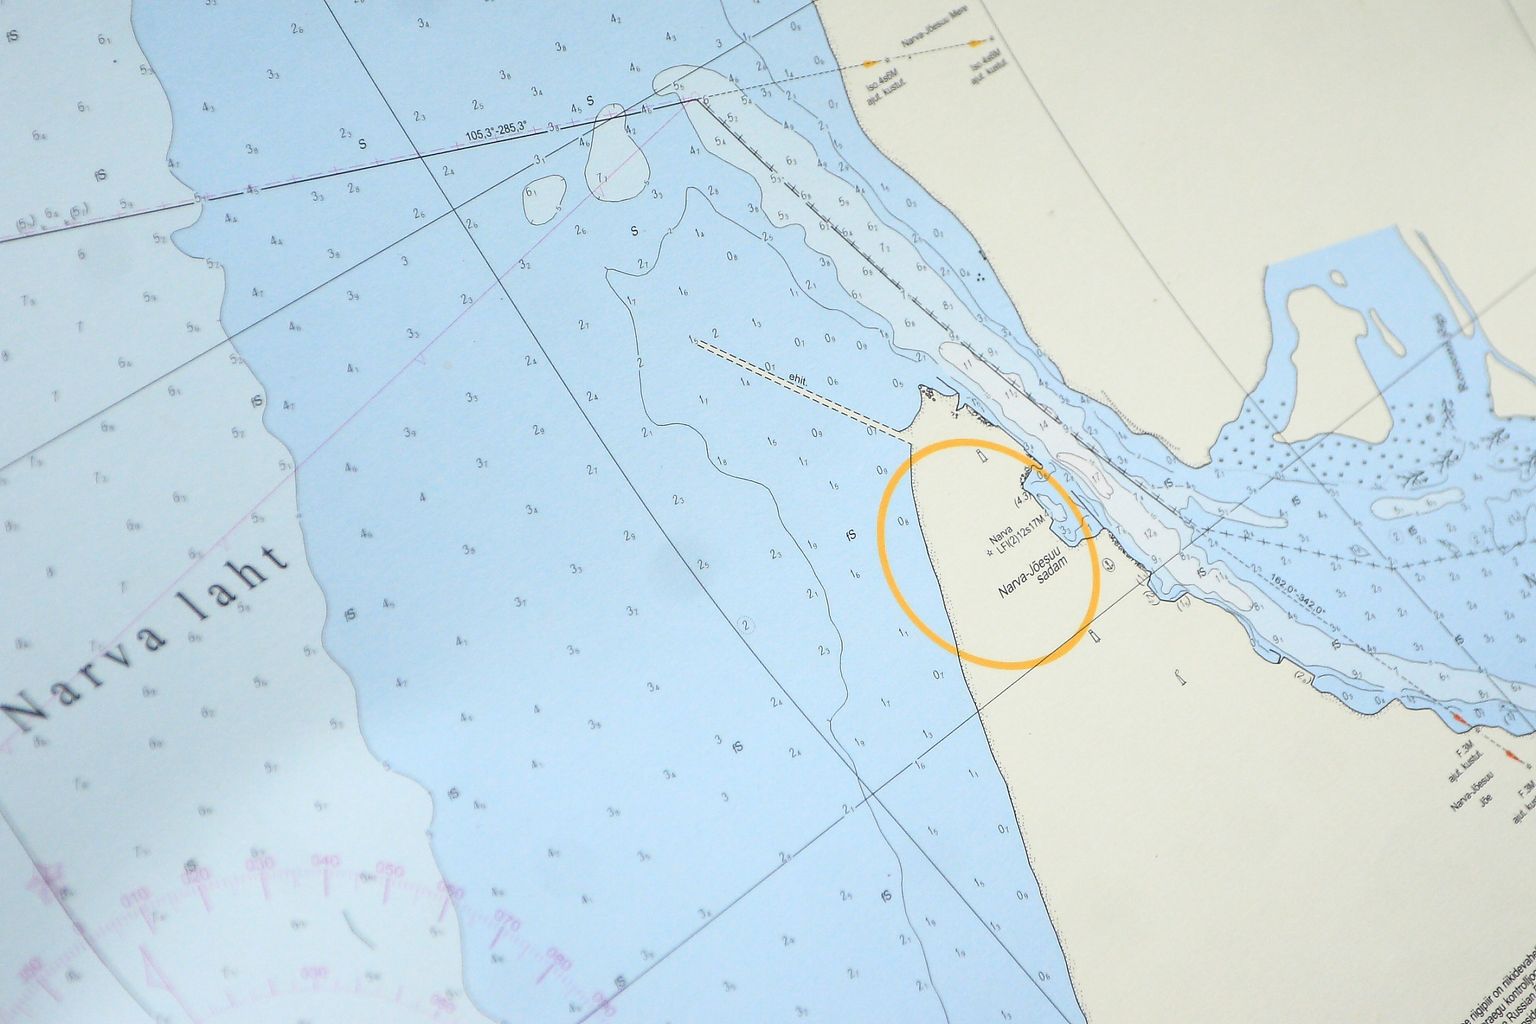 Устье пограничной реки и старый морской мол, отмеченные на карте Нарвского залива.